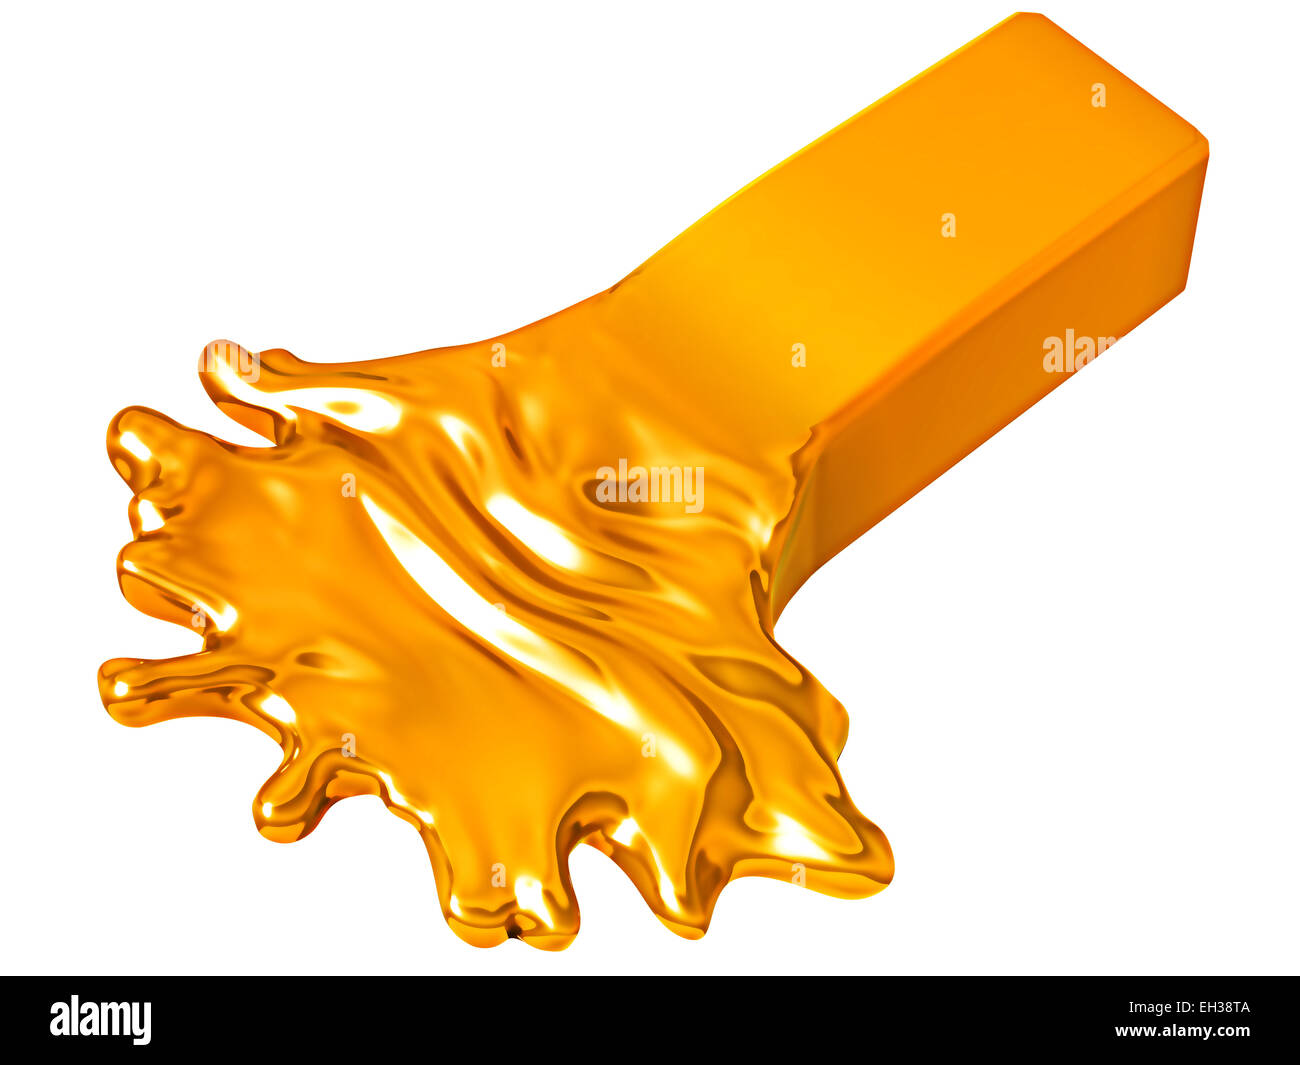 Abschreibung: Schmelzen Goldbar isoliert auf weißem Hintergrund Stockfoto